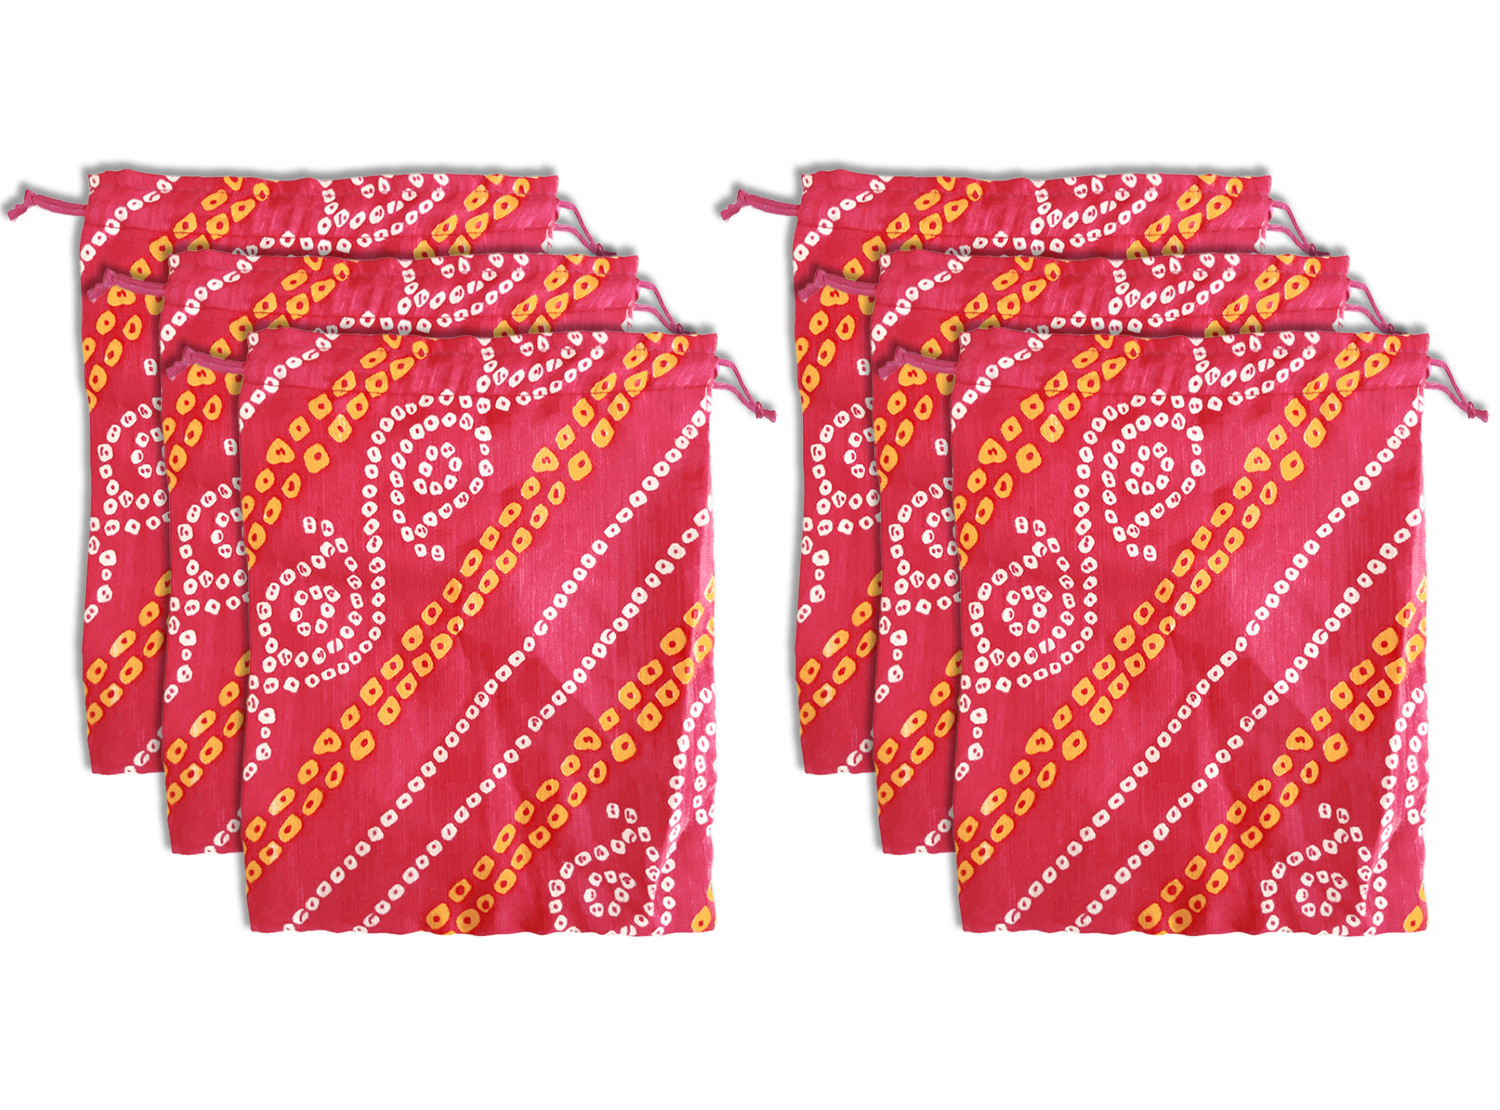 Kuber Industries Multiuses Bandhej Print Potli Bag for women With Drawstring (Pink)